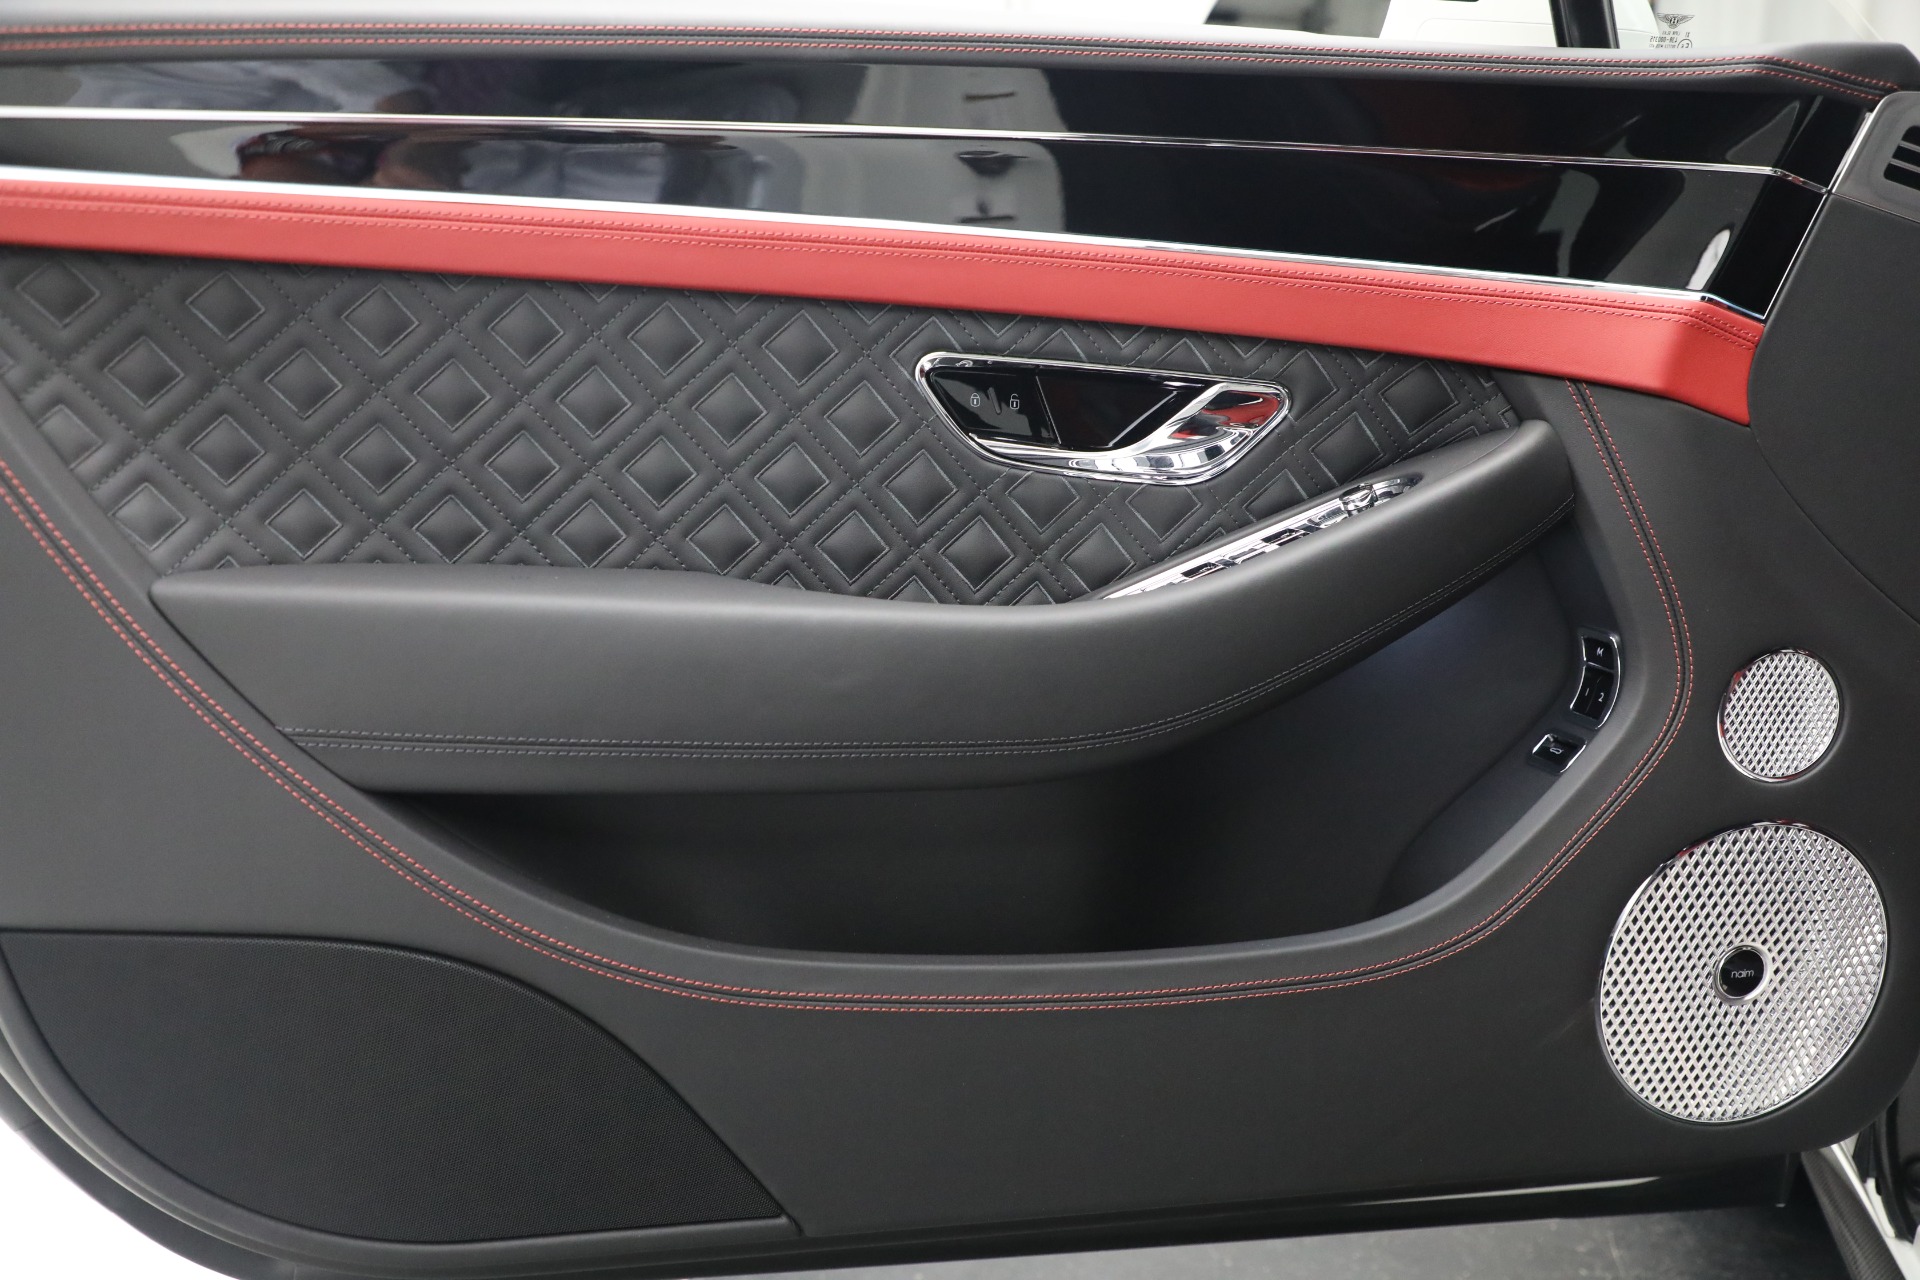 New 2022 Bentley Continental GT V8